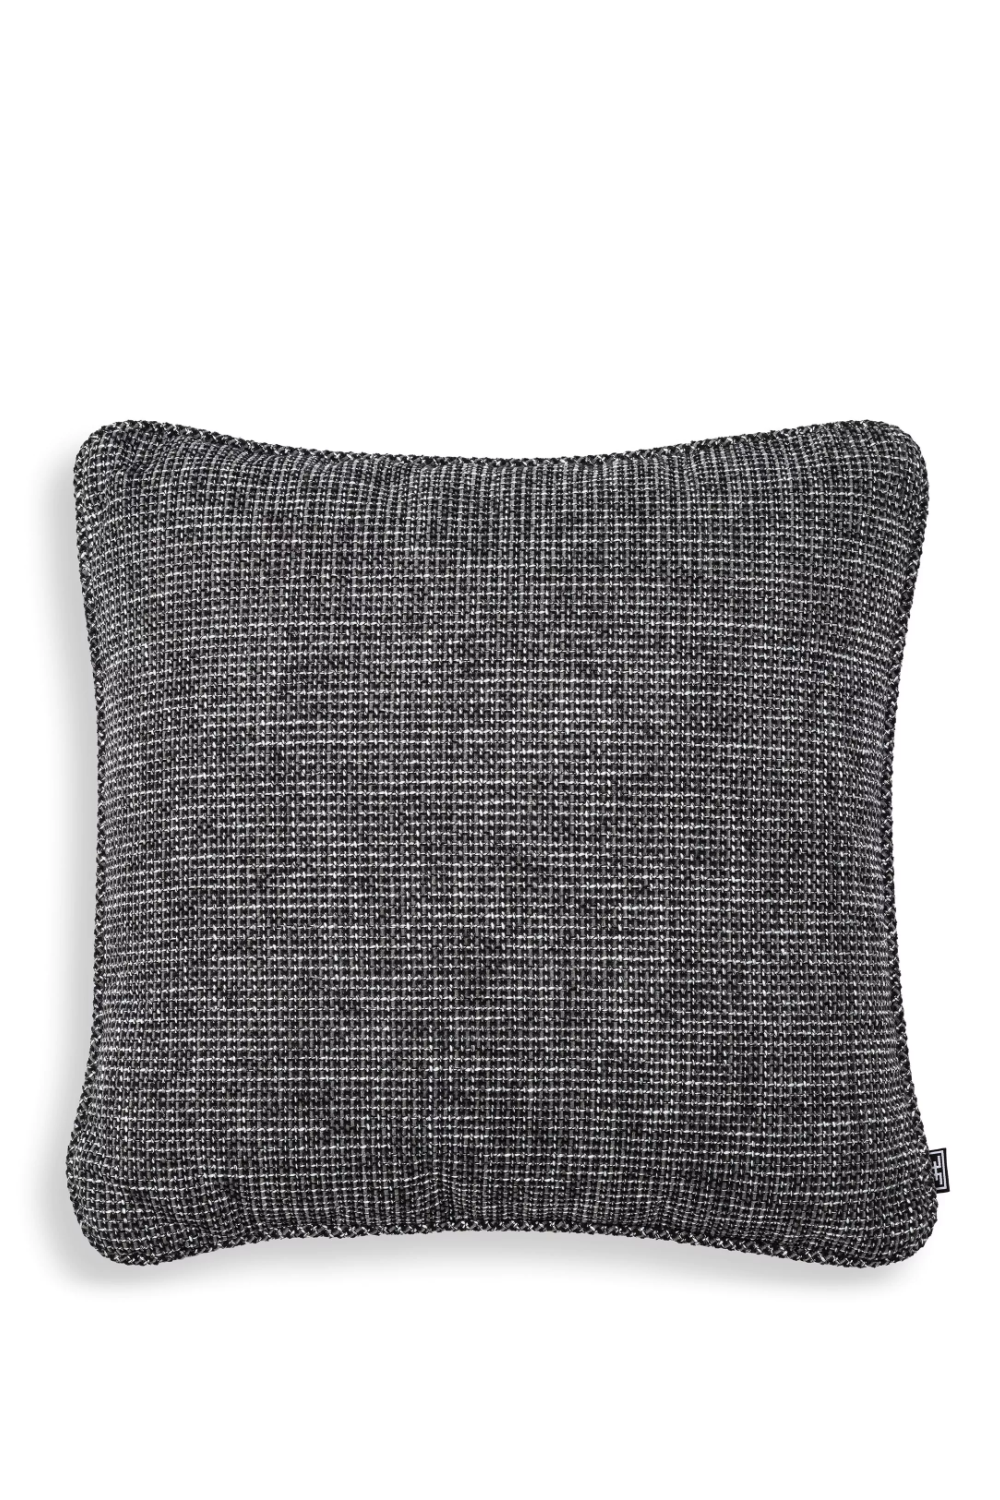 Black Contemporary Throw Pillow | Eichholtz Rocat | Oroa.com